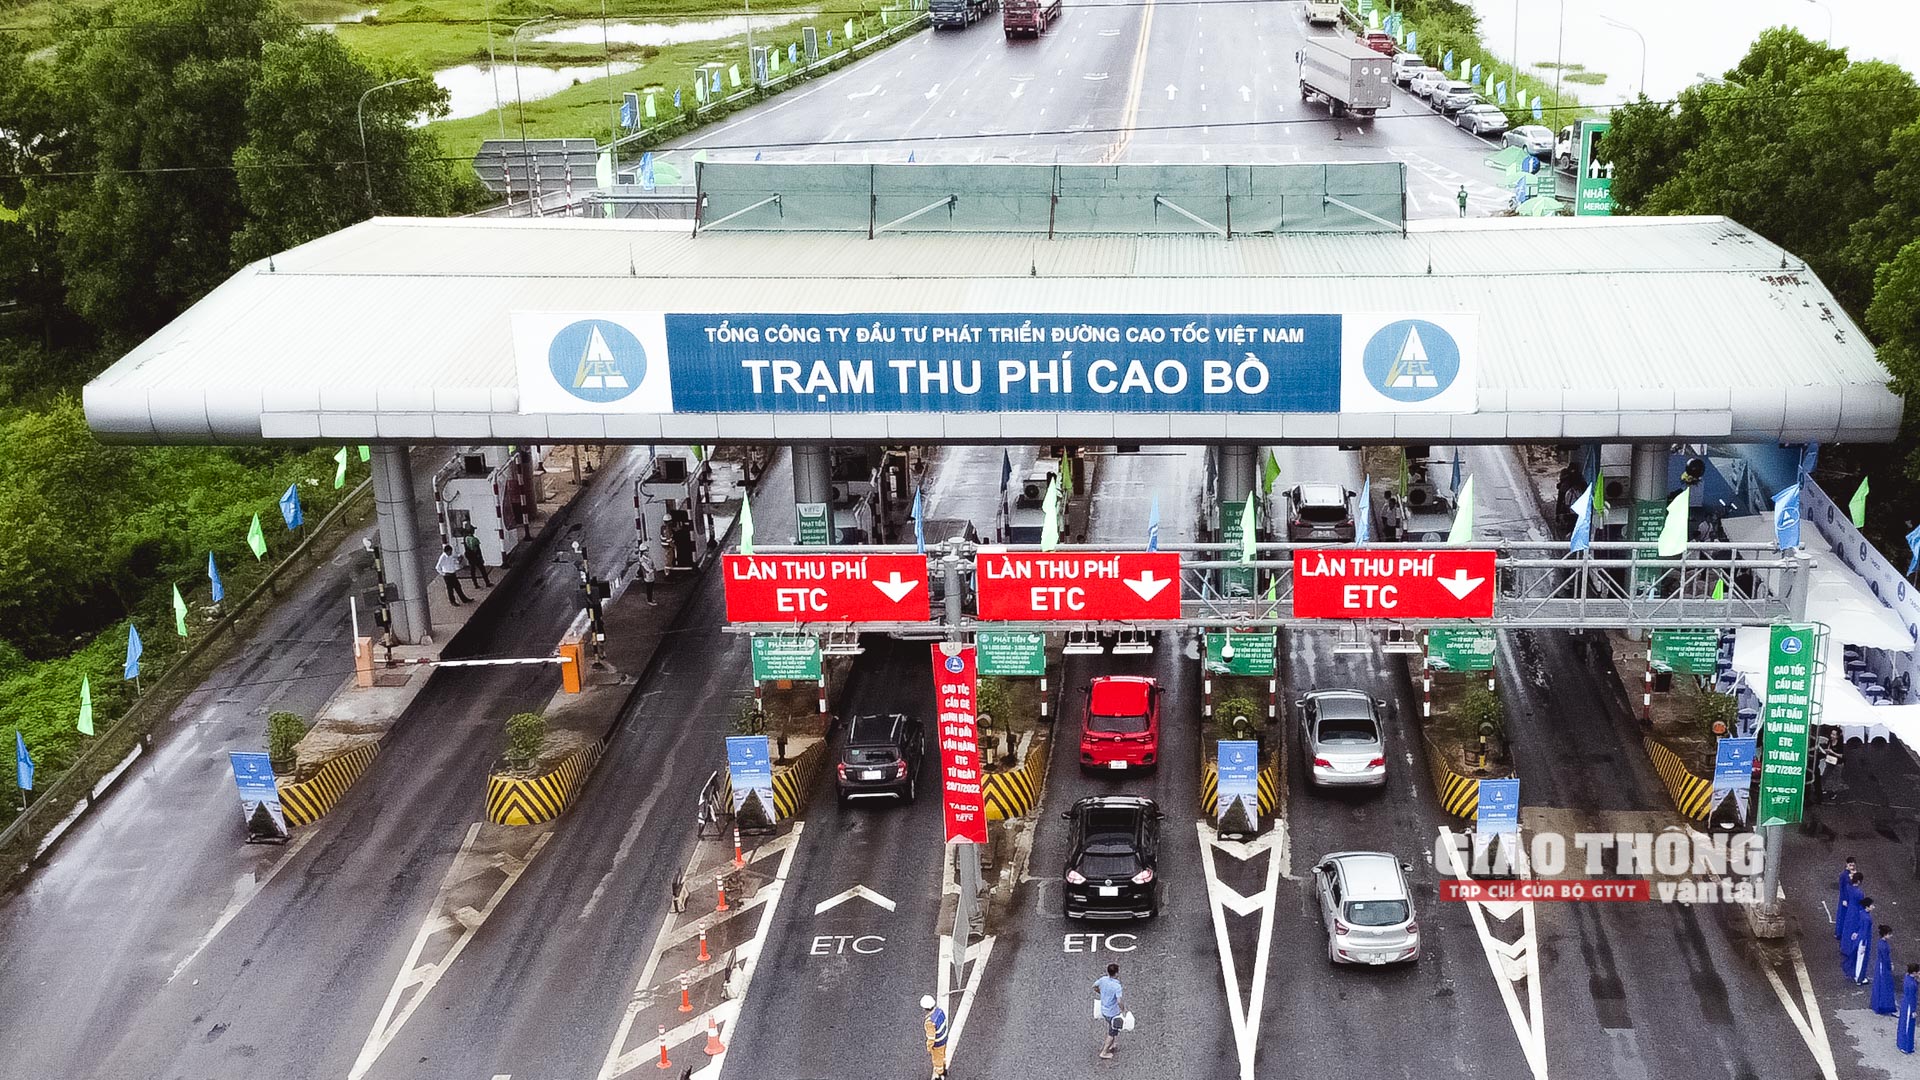 Tất cả các trạm thu phí tuyến Cầu Giẽ - Ninh Bình từ 23h45 ngày 20/7/2022 đều đã lắp đặt làn ETC, vượt tiến độ từ 5 đến 10 ngày theo yêu cầu của Chính phủ và rút ngắn khoảng 45 ngày so với hợp đồng.